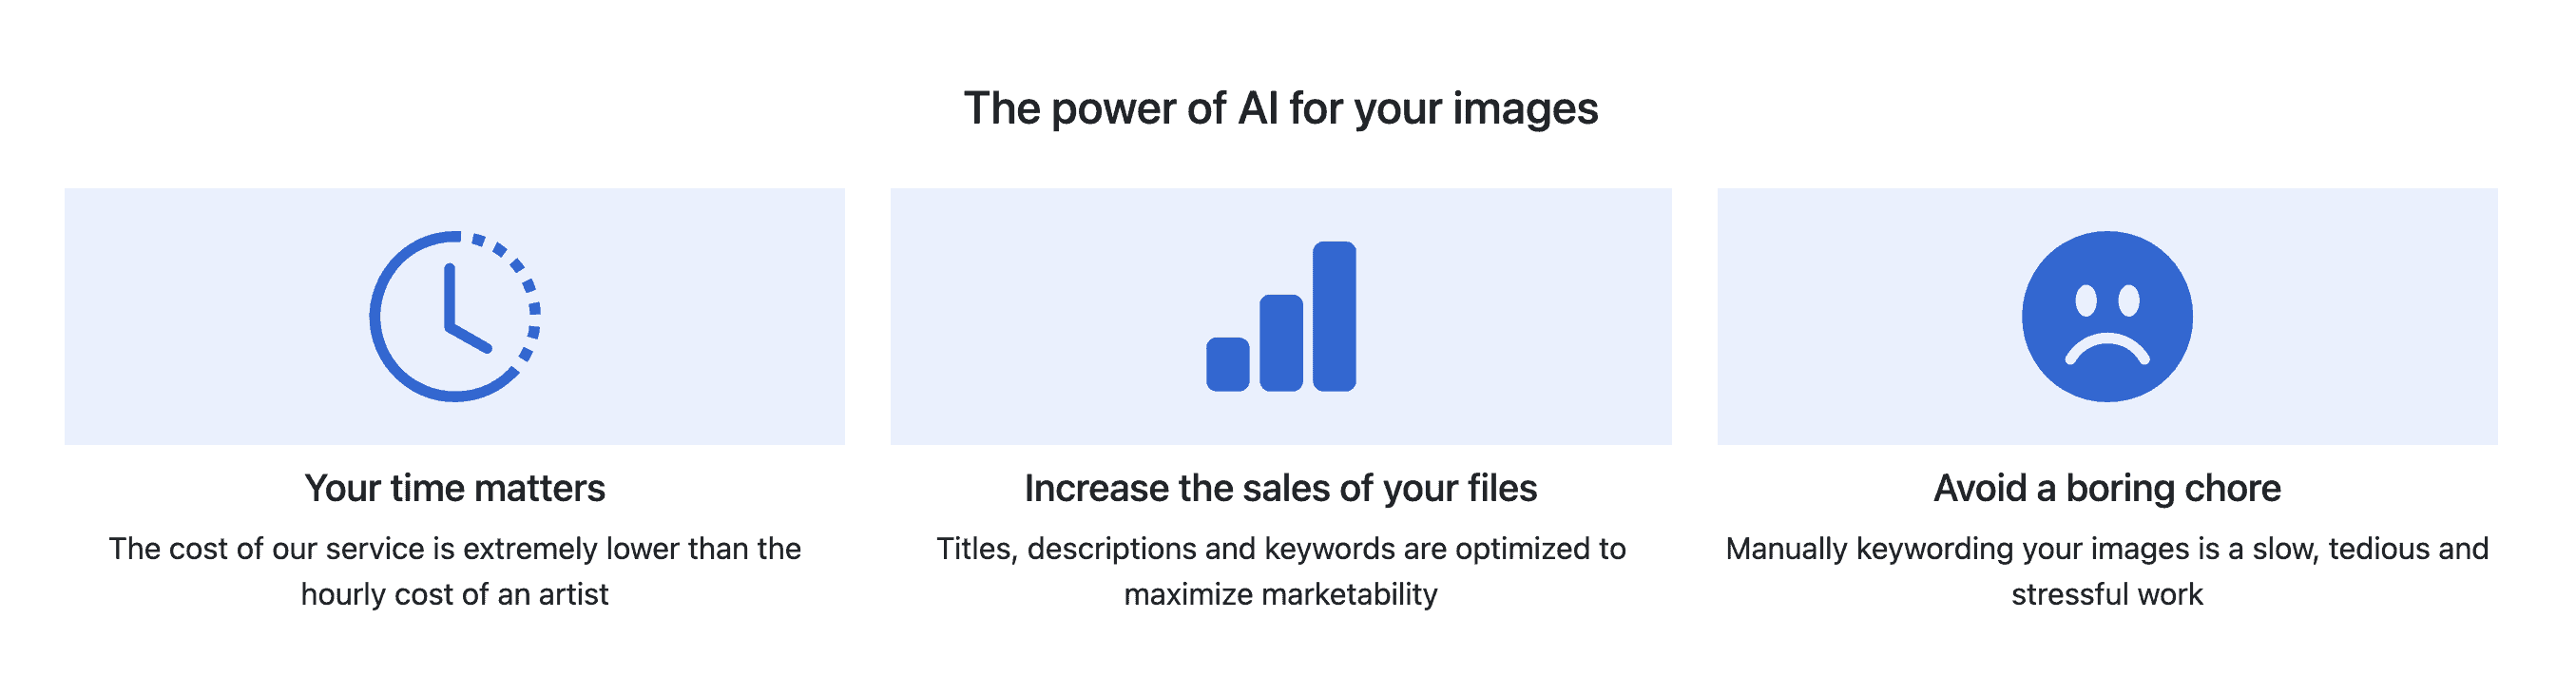 VisualMind.ai AI keywording tool highlights 